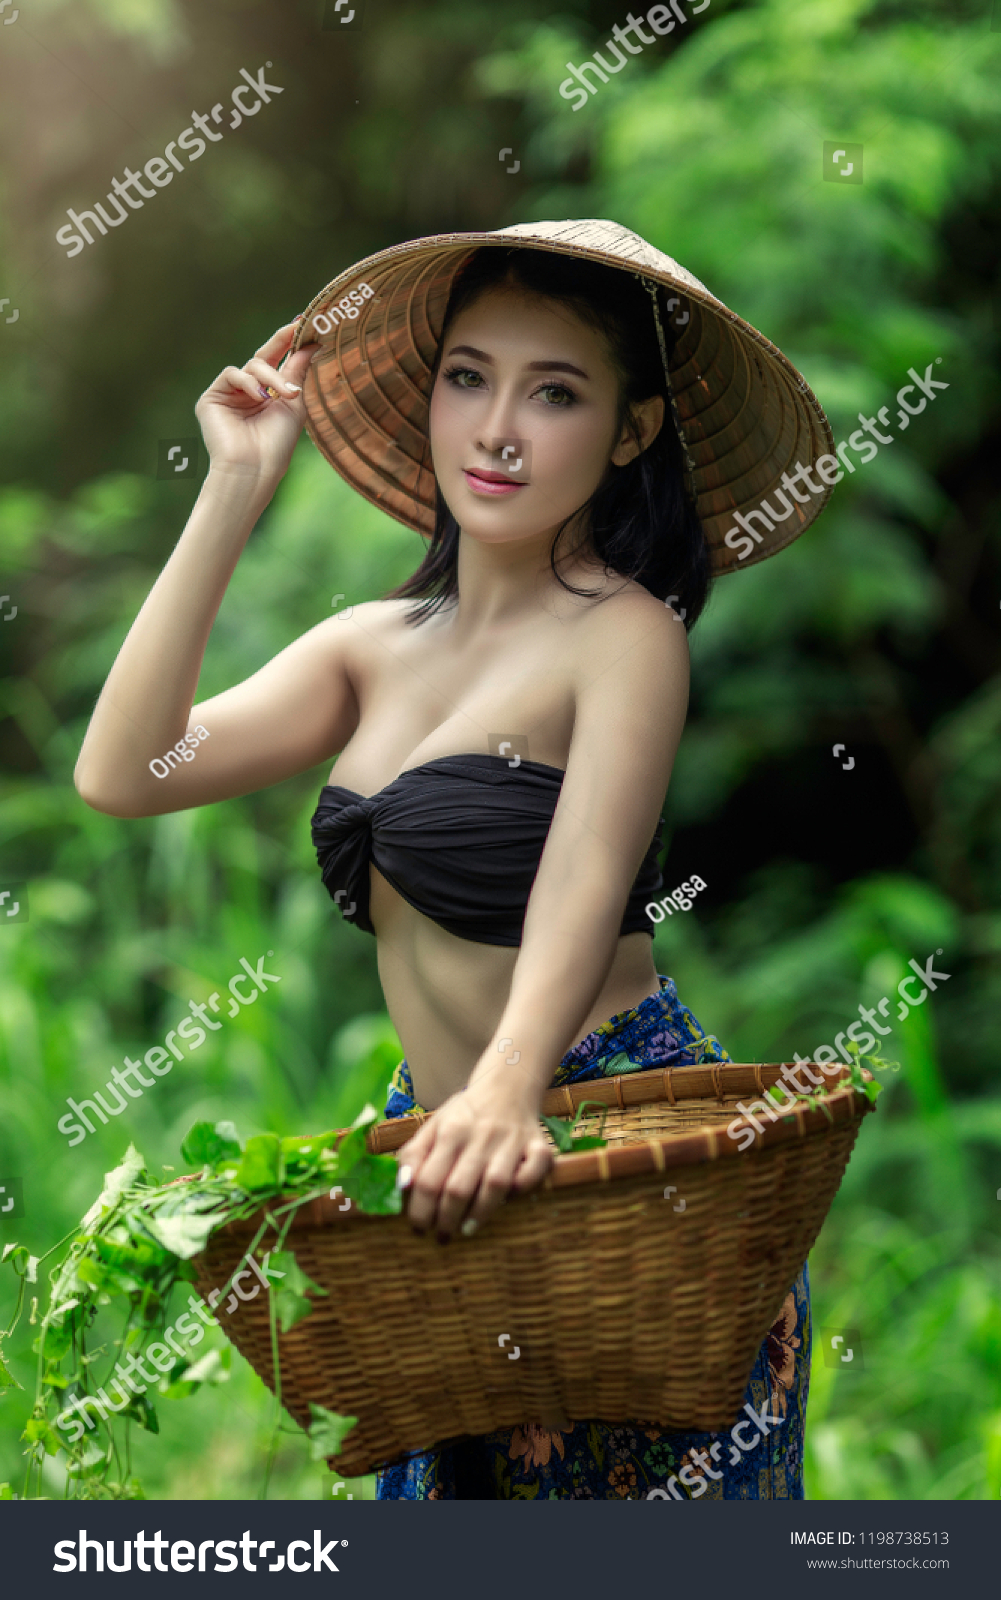 Thailand Girls Photos